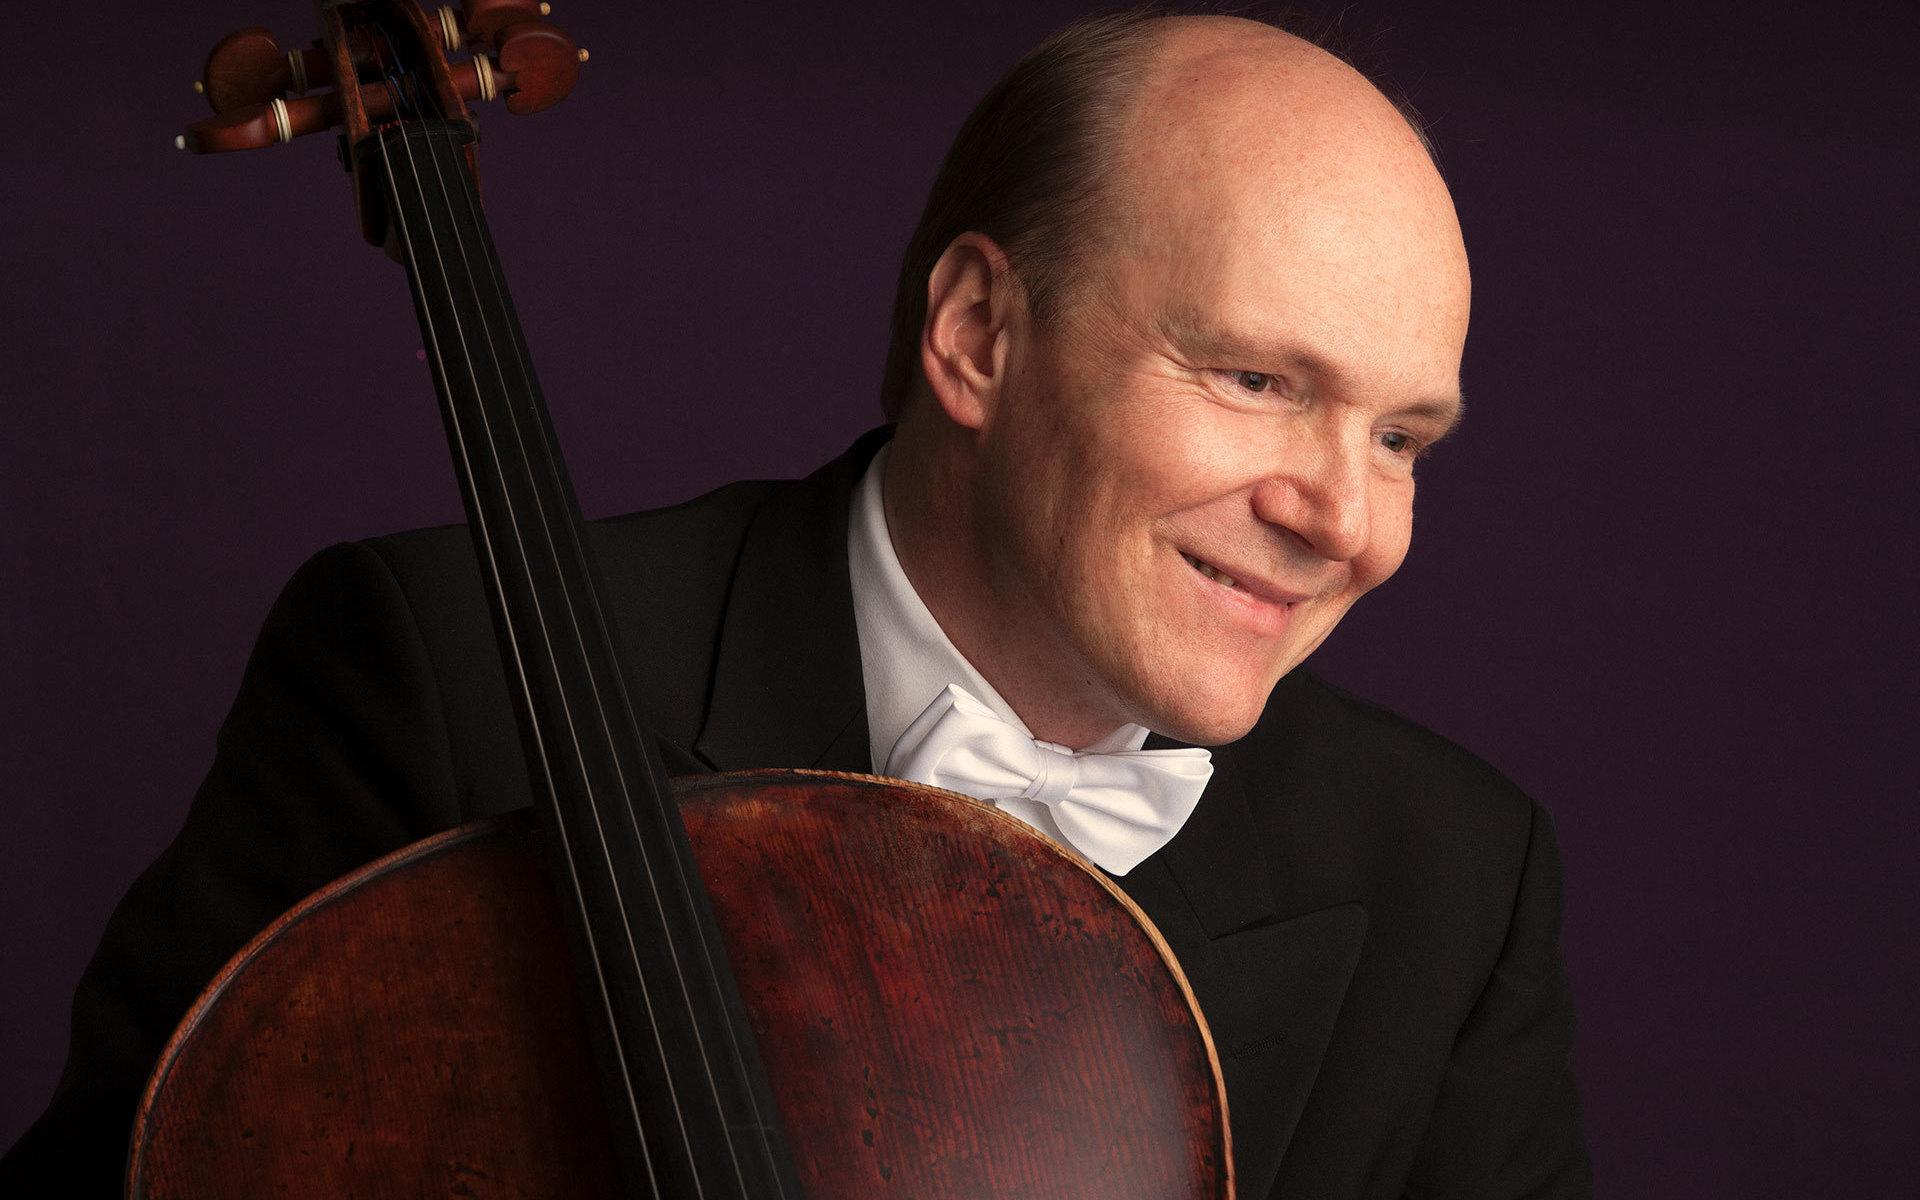 Norske cellisten Truls Mørk framför i höst flera konserter med Göteborgs symfonikerna, däribland  Dvoráks cellokonsert. I oktober ska han också följa med på symfonikernas turné till Spanien – om allt går som planerat.